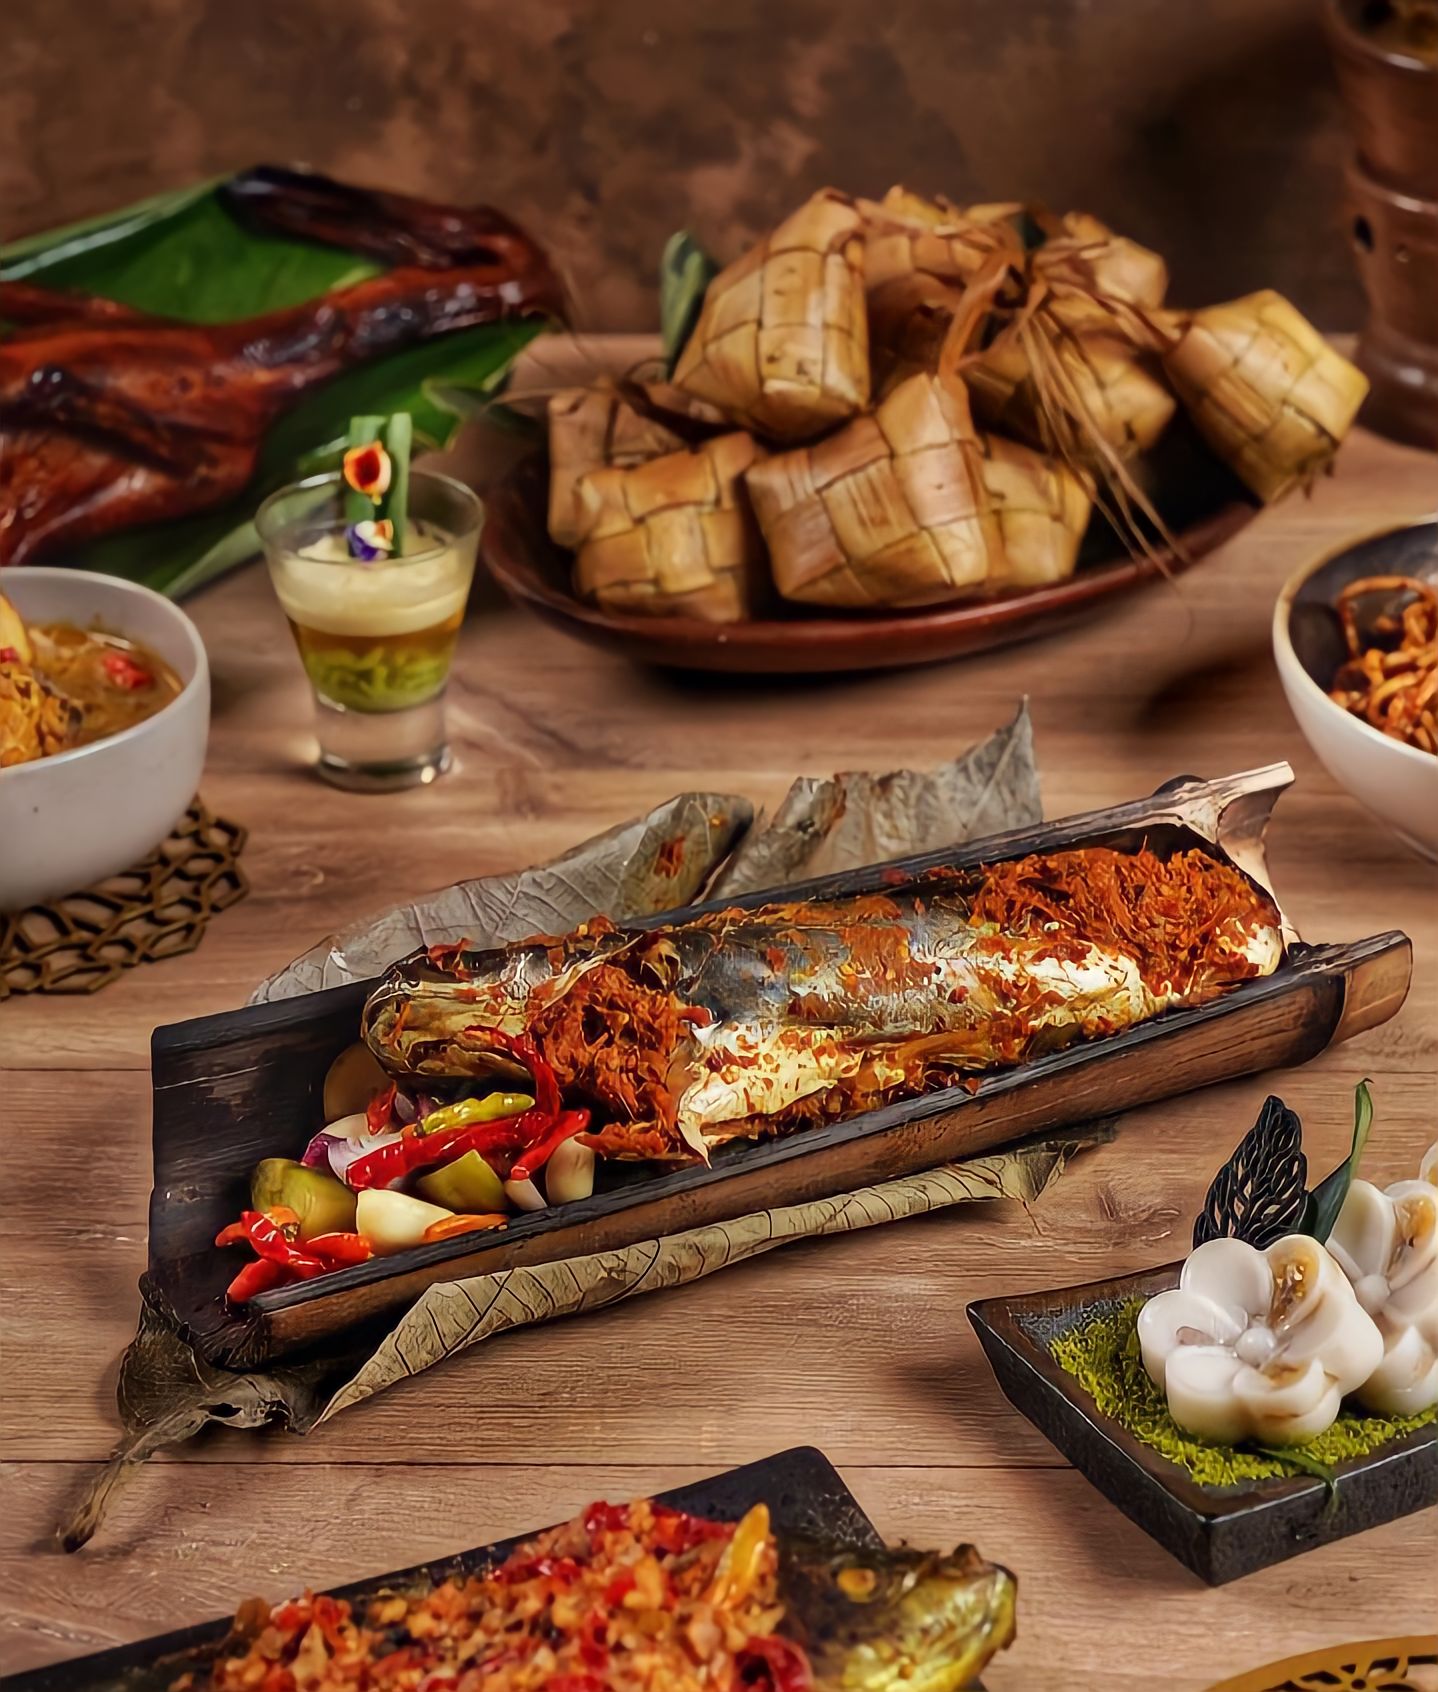 Meriahkan Buka Bersama Kalian di Vasa Hotel Surabaya dengan Varian Kuliner Terbaik dari 9 Kerajaan Nusantara